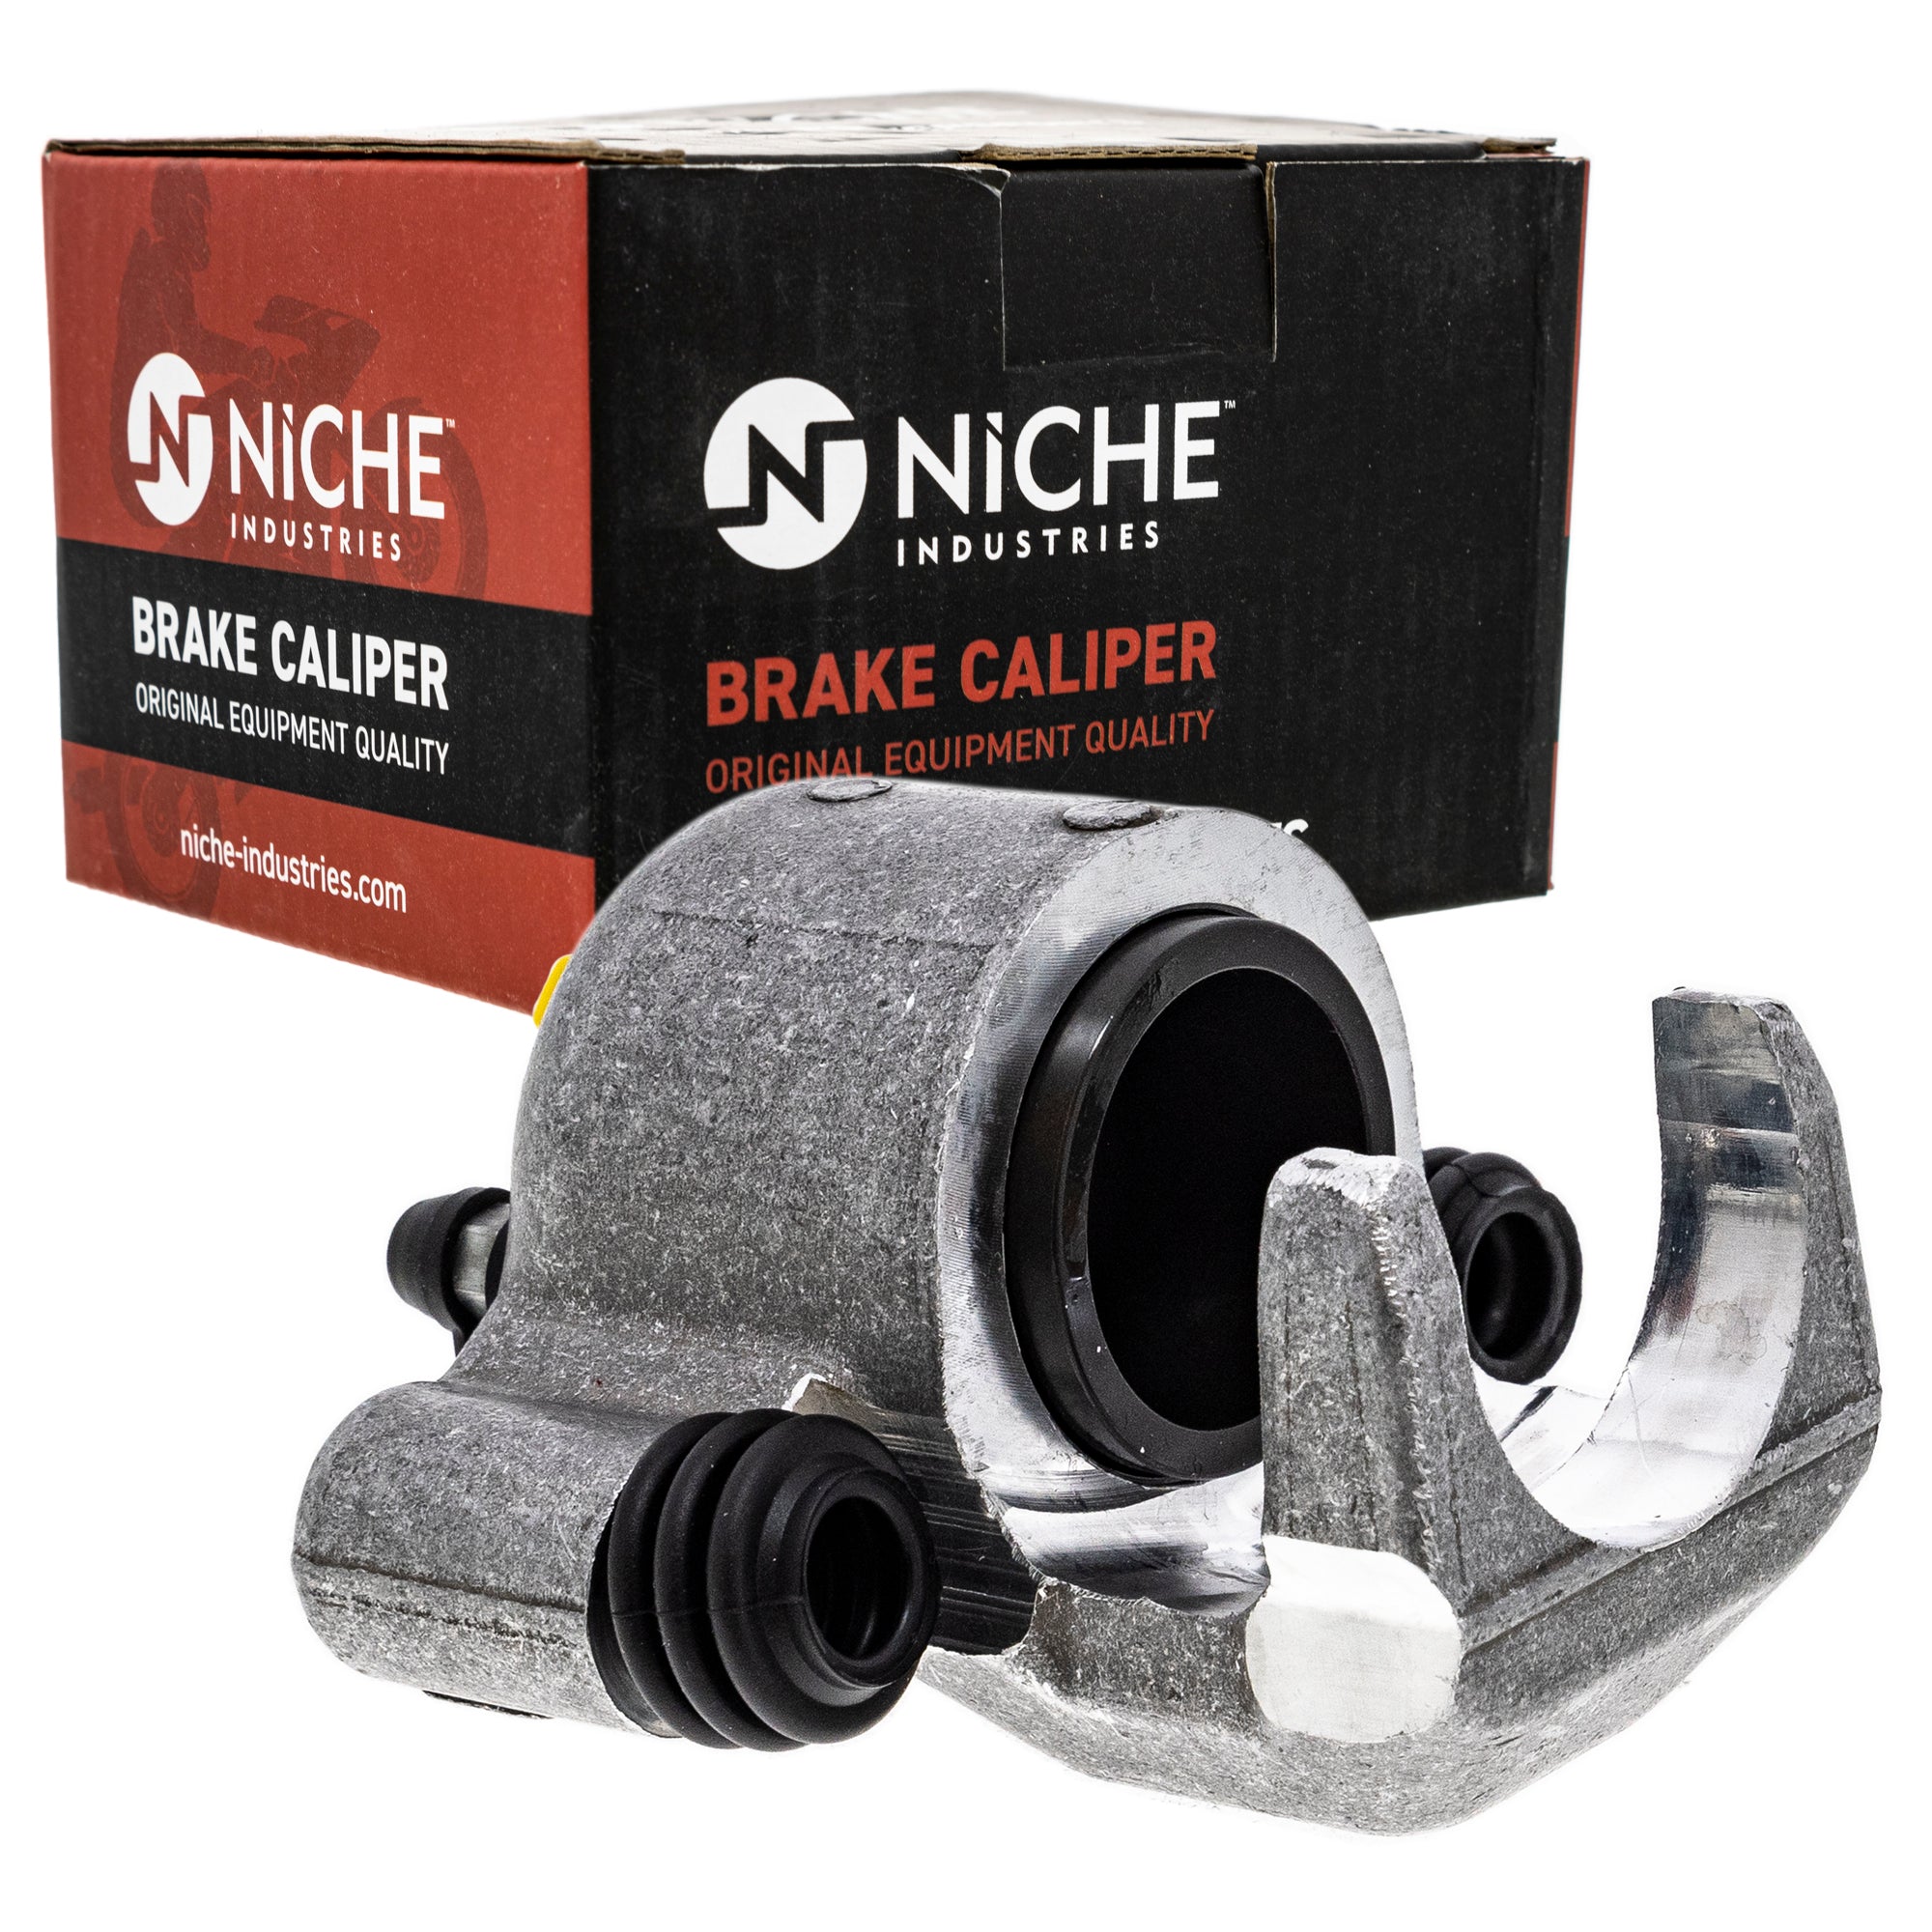 NICHE MK1001237 Brake Caliper Kit